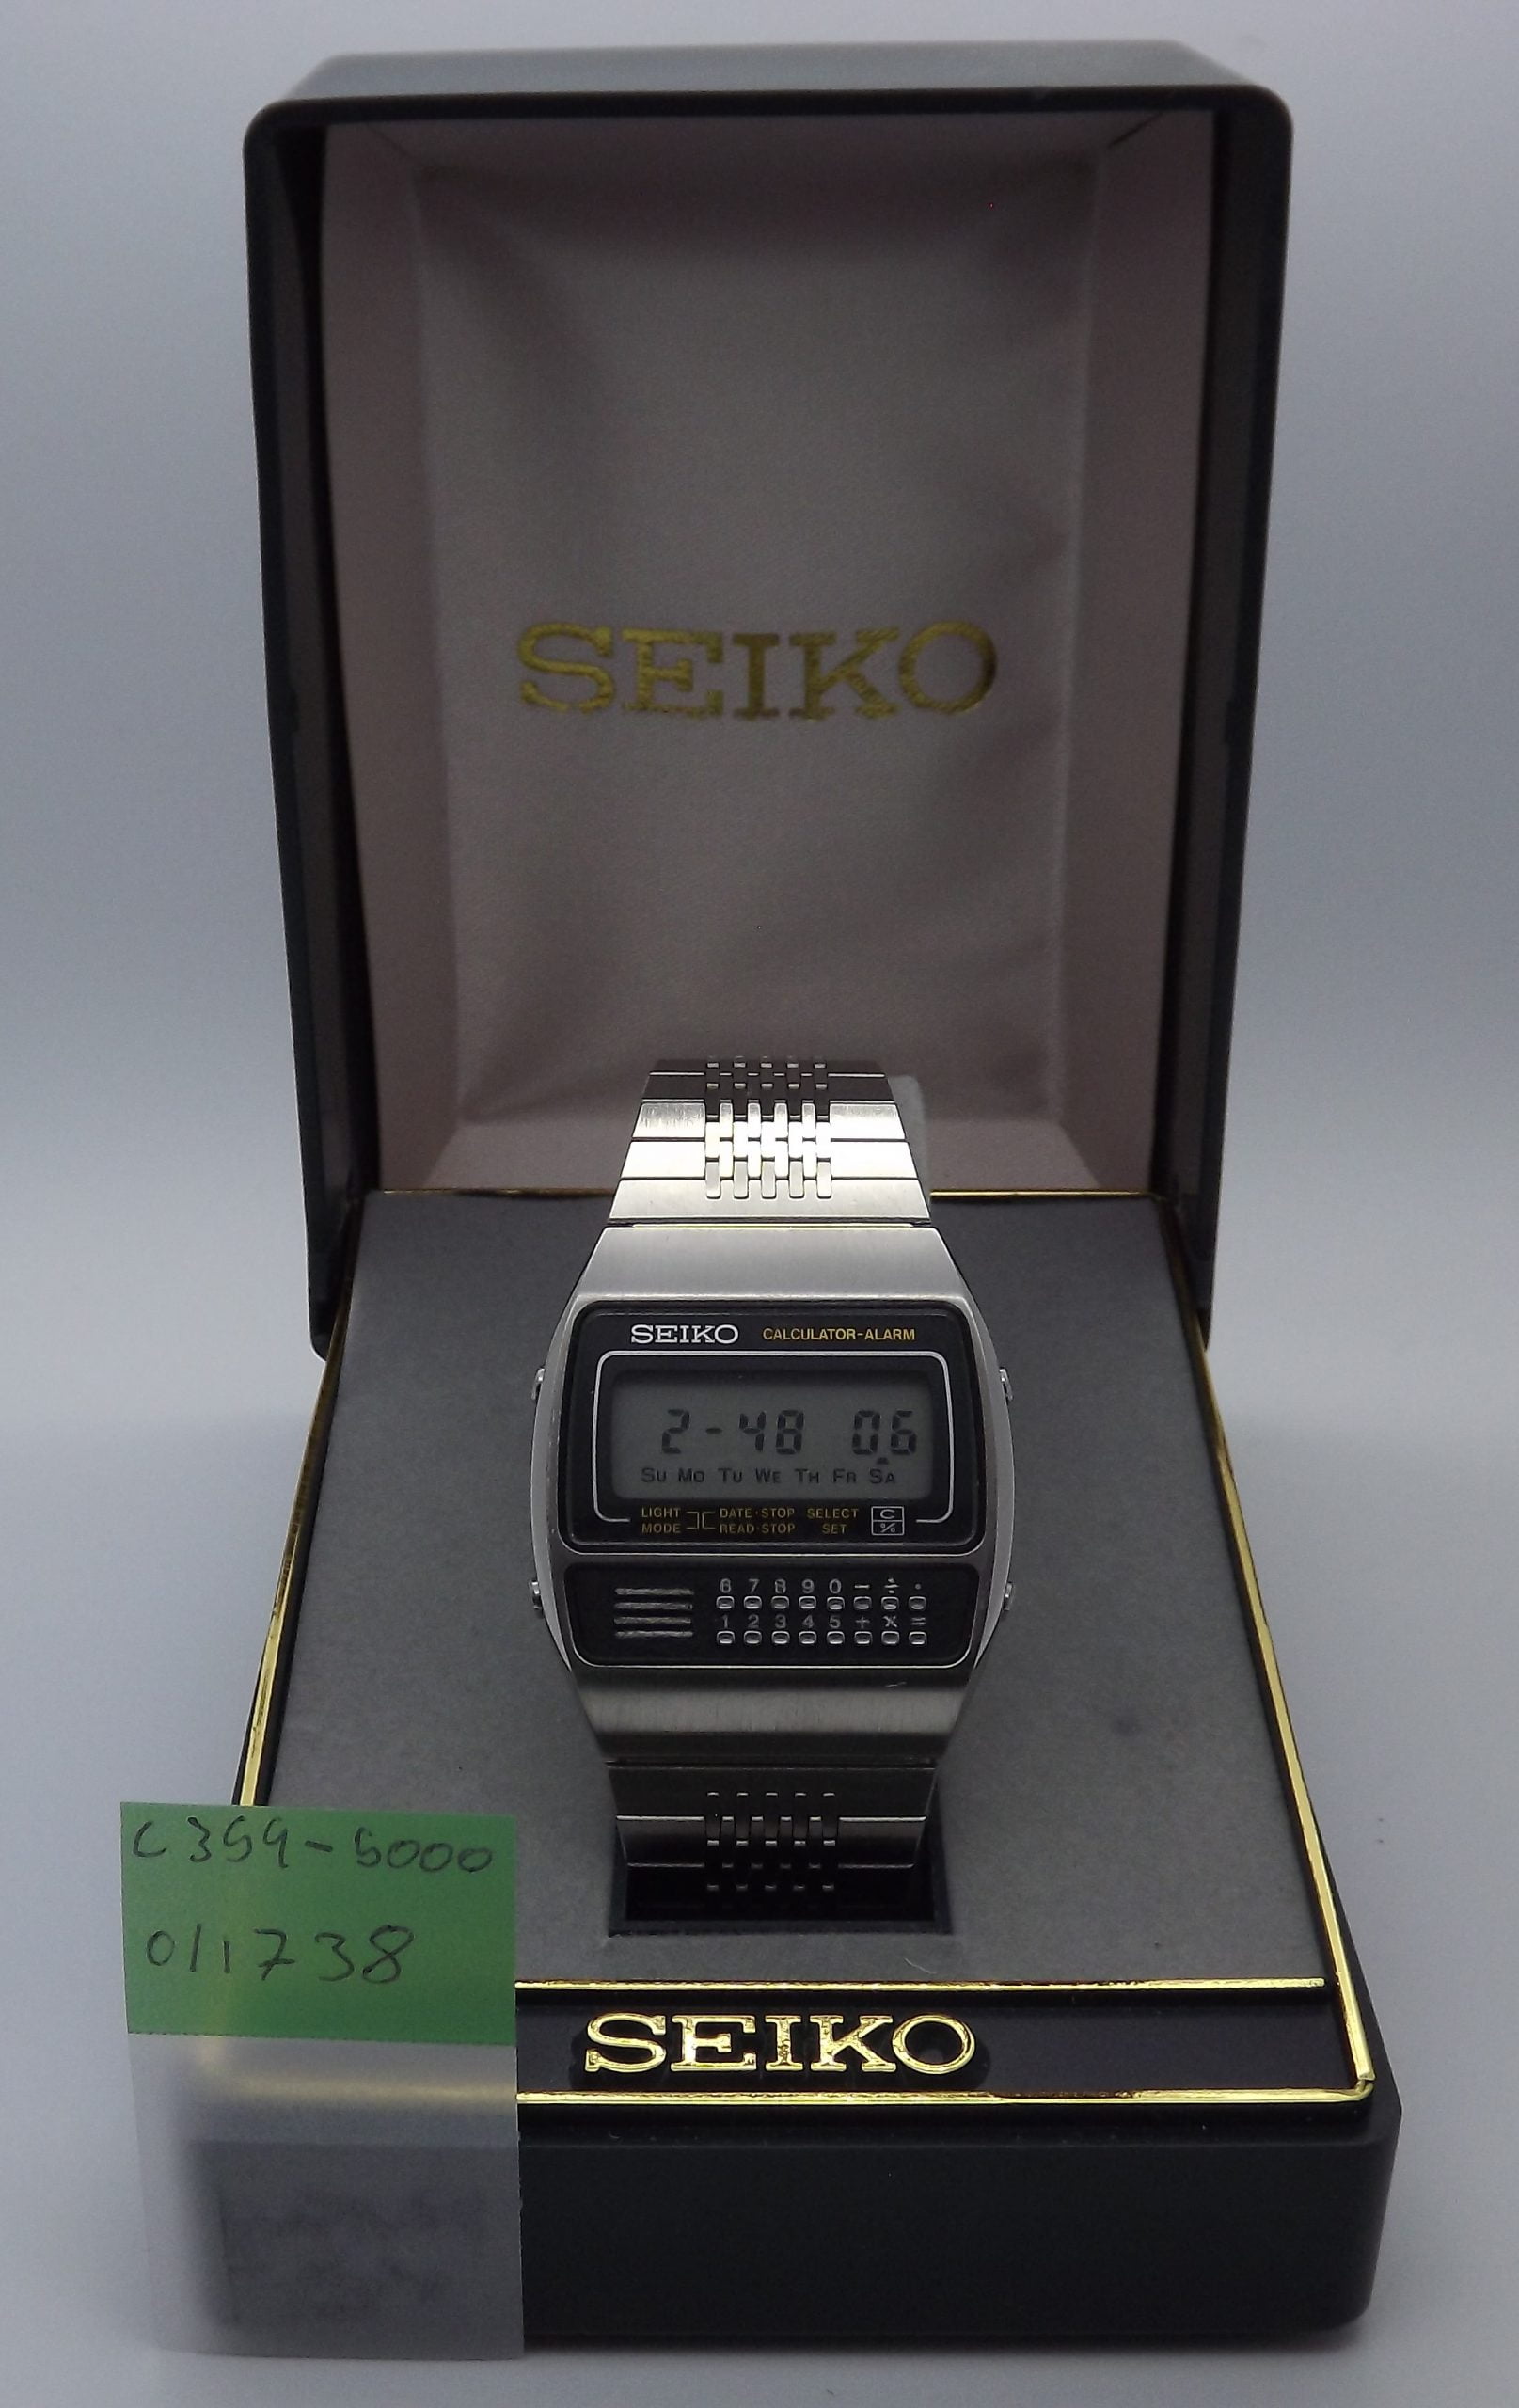 C359-5000 – Seiko Works